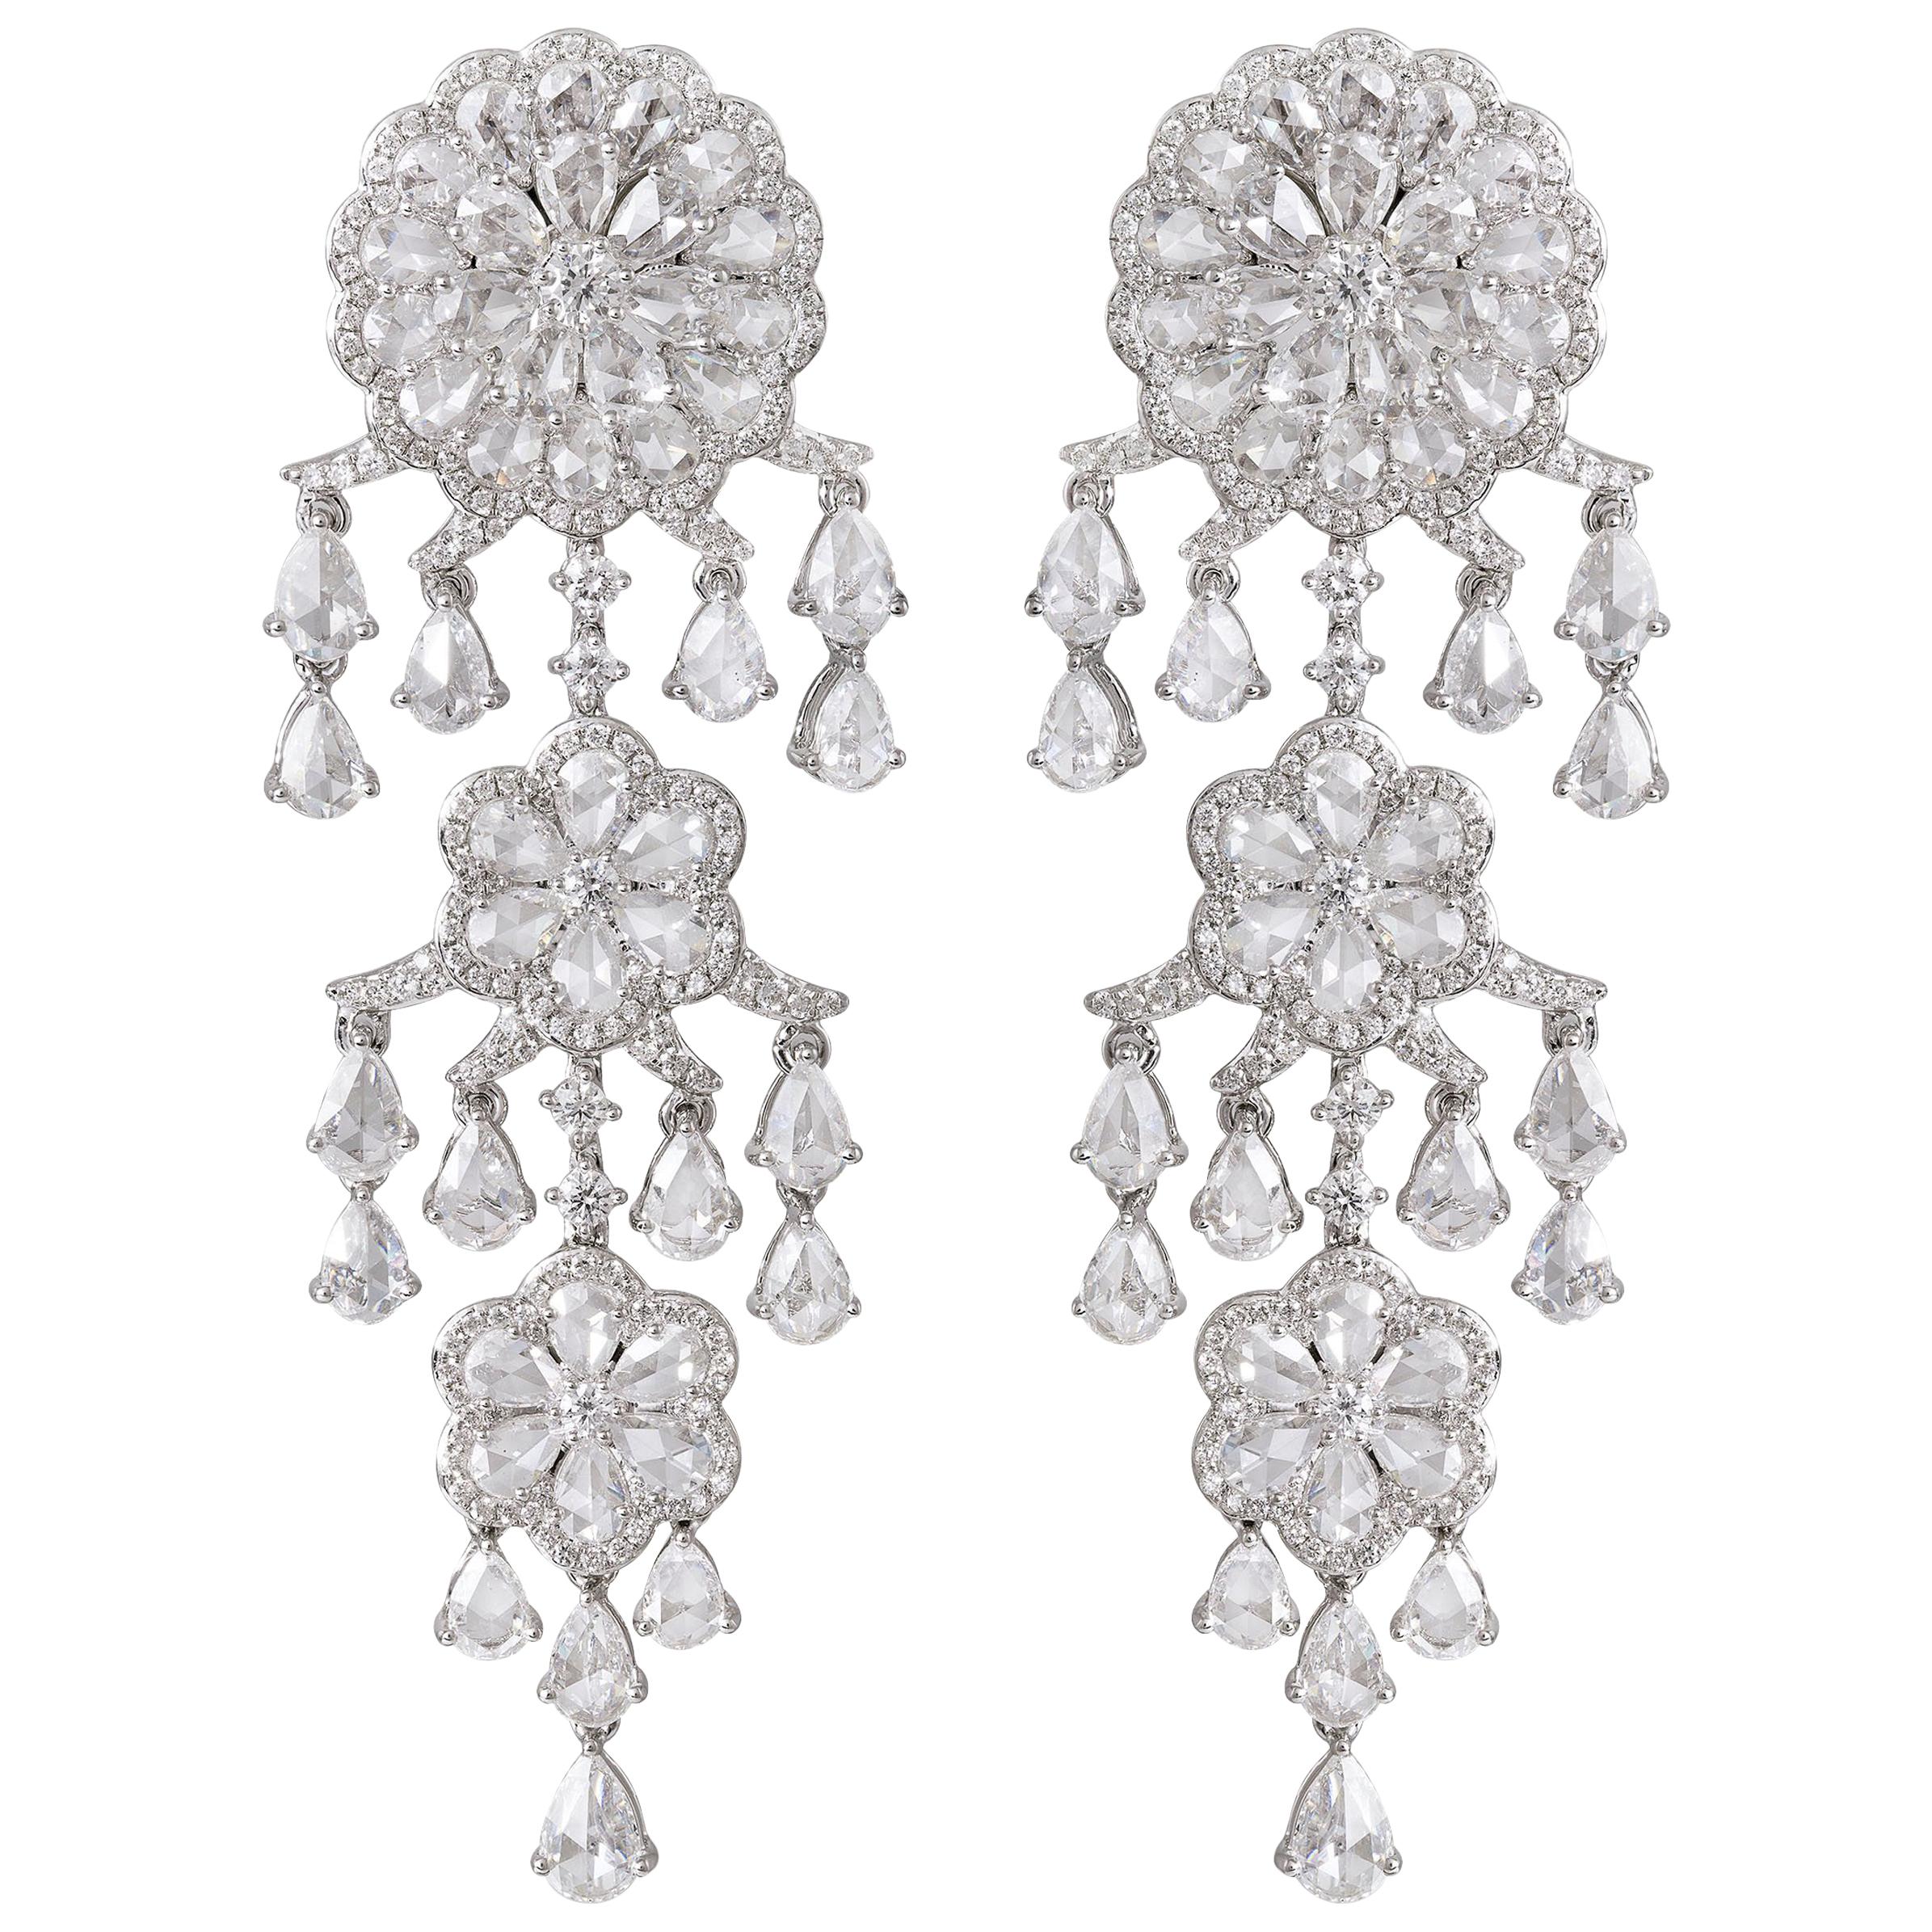 Rarever 18K White Gold 9.77ct Rose Cut Diamond Chandelier Earrings